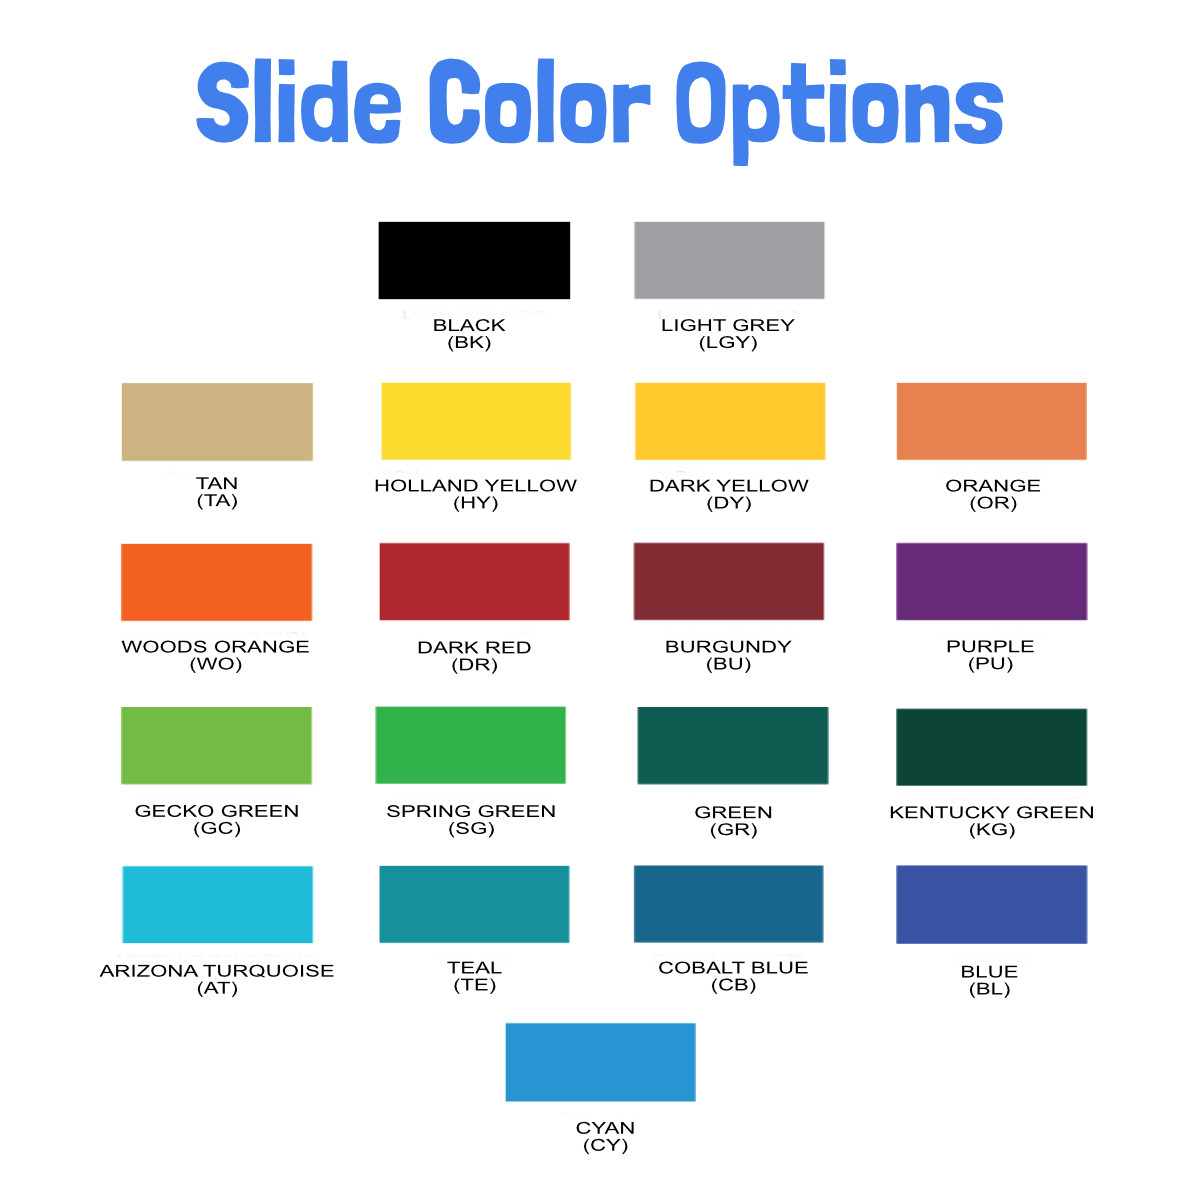 SPI Standard Slide Color Option